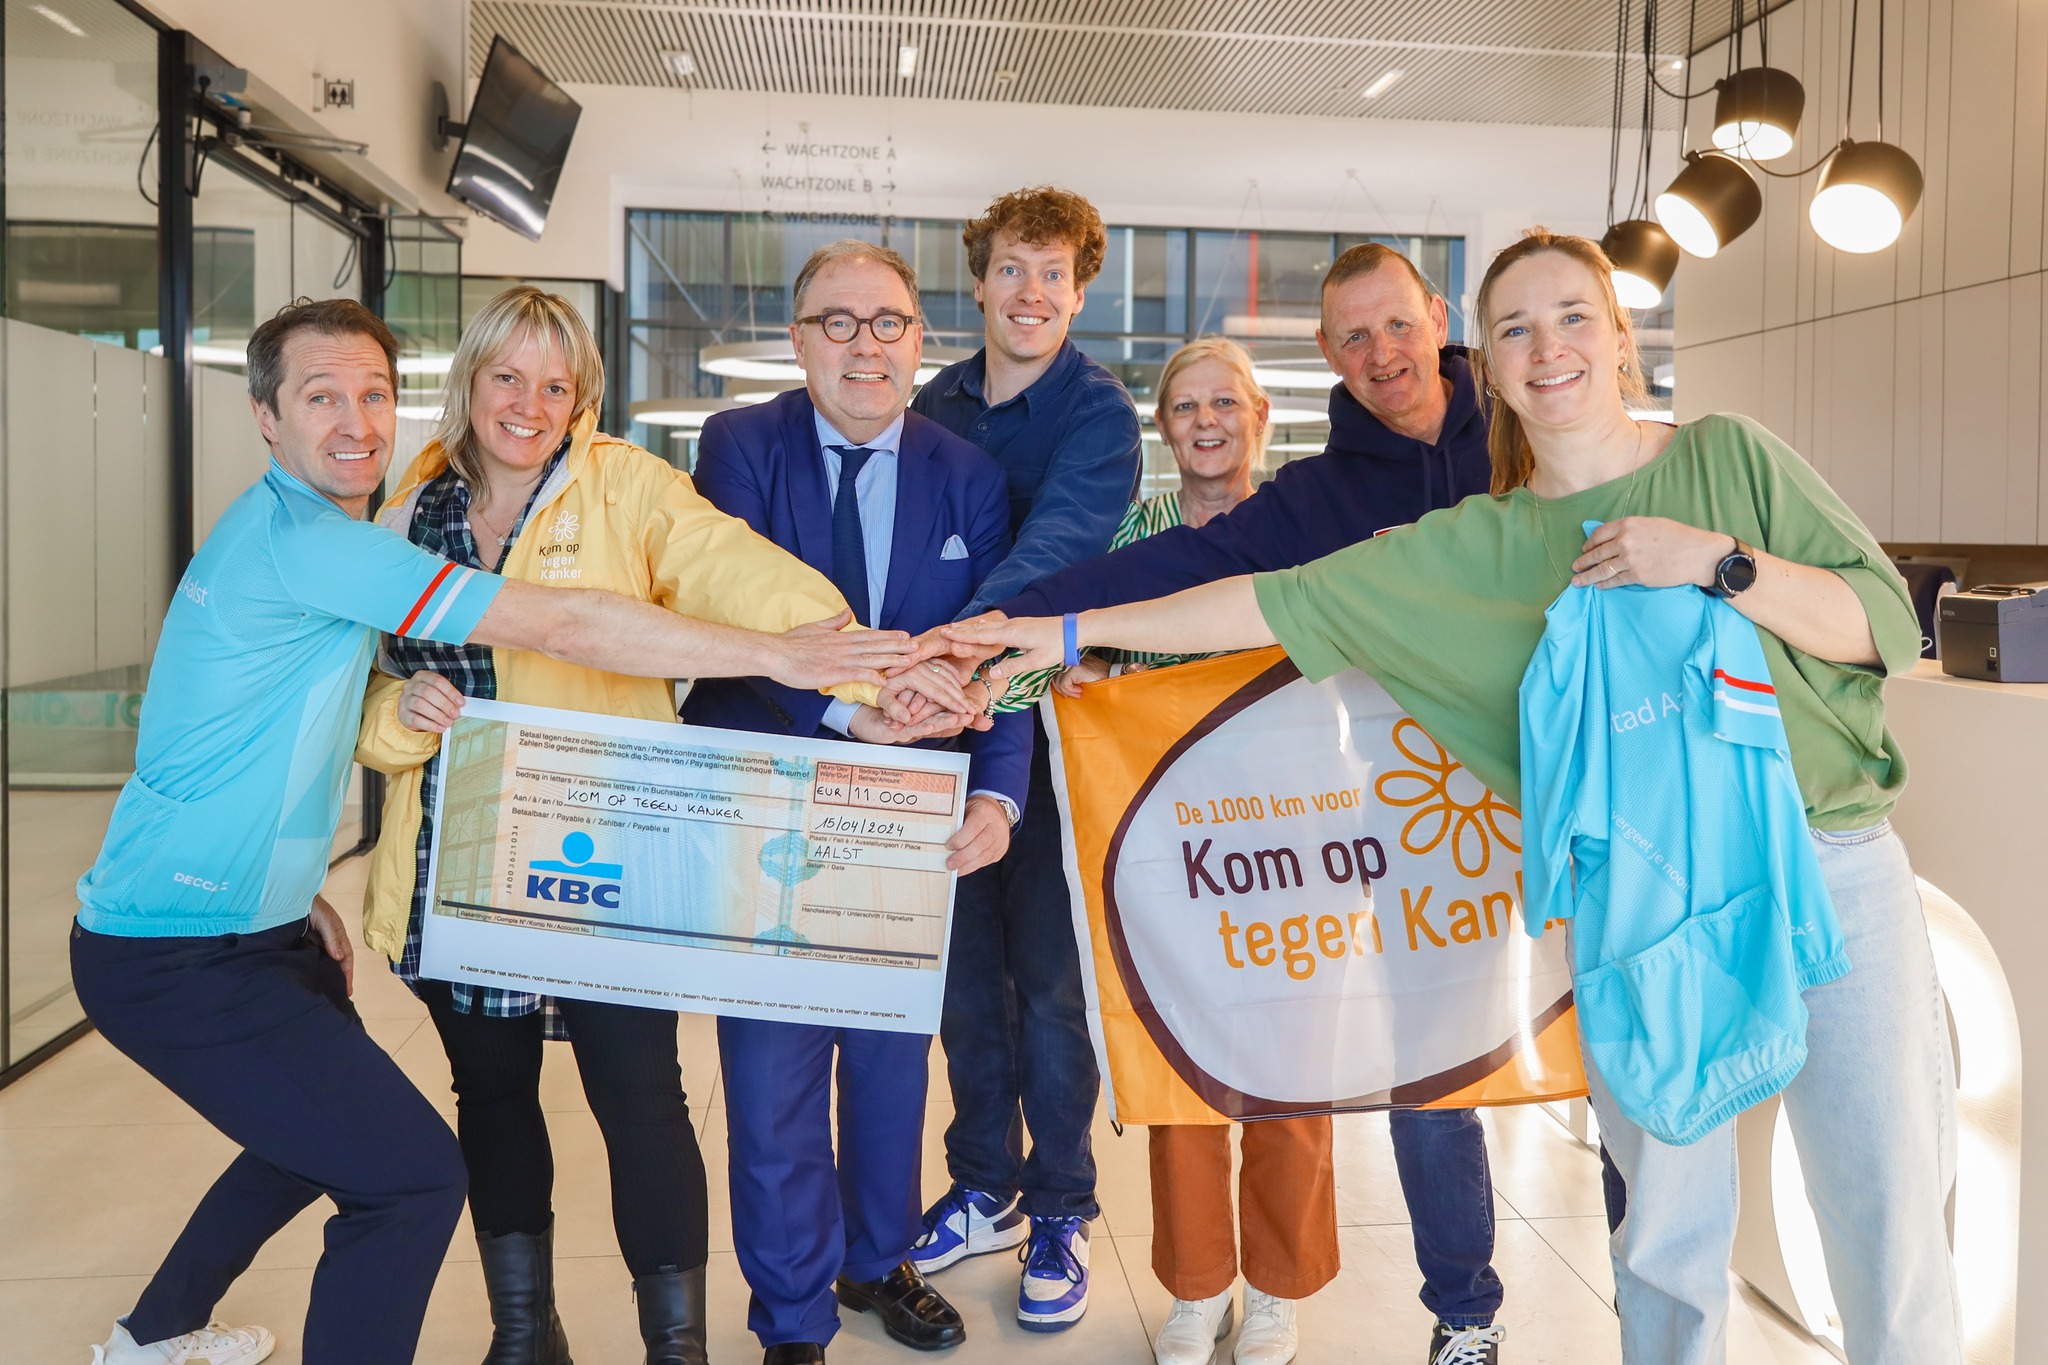 Aalst is op 10 mei middagstad van de 1000 km voor Kom op tegen Kanker: “11 000 EUR naar het goede doel”